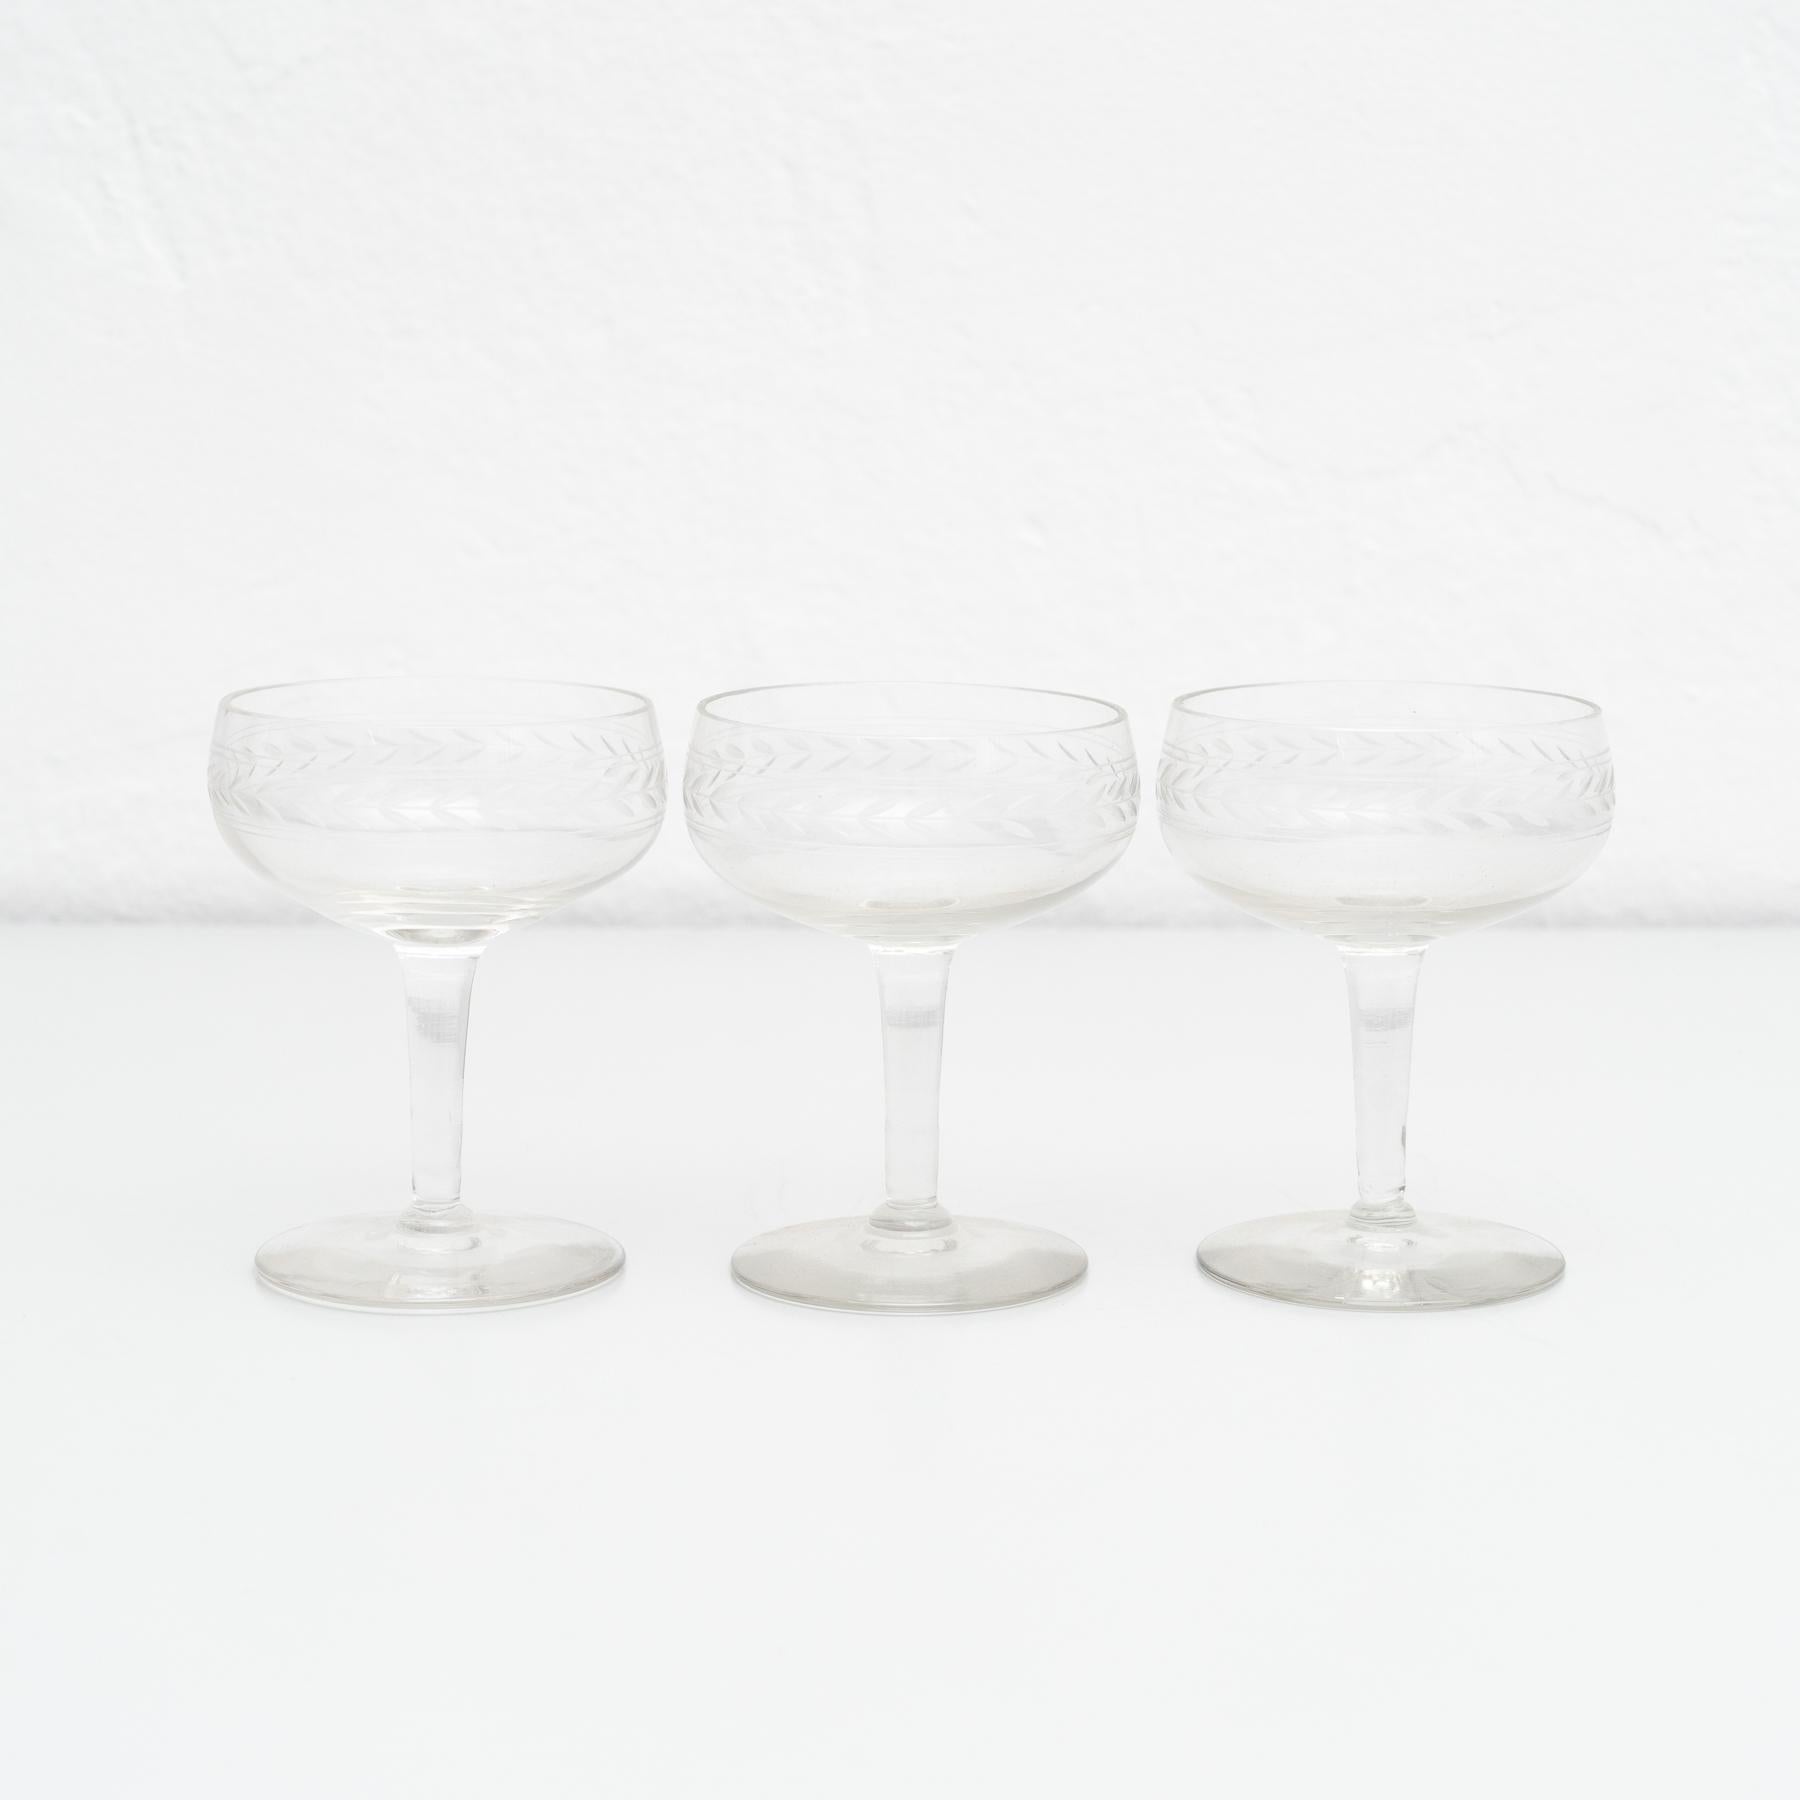 Antiker französischer Satz von 3 Glasweinbechern auf einem Messingtablett.

Hergestellt von einem unbekannten Hersteller in Frankreich, um 1950.

Originaler Zustand mit geringen alters- und gebrauchsbedingten Abnutzungserscheinungen, der eine